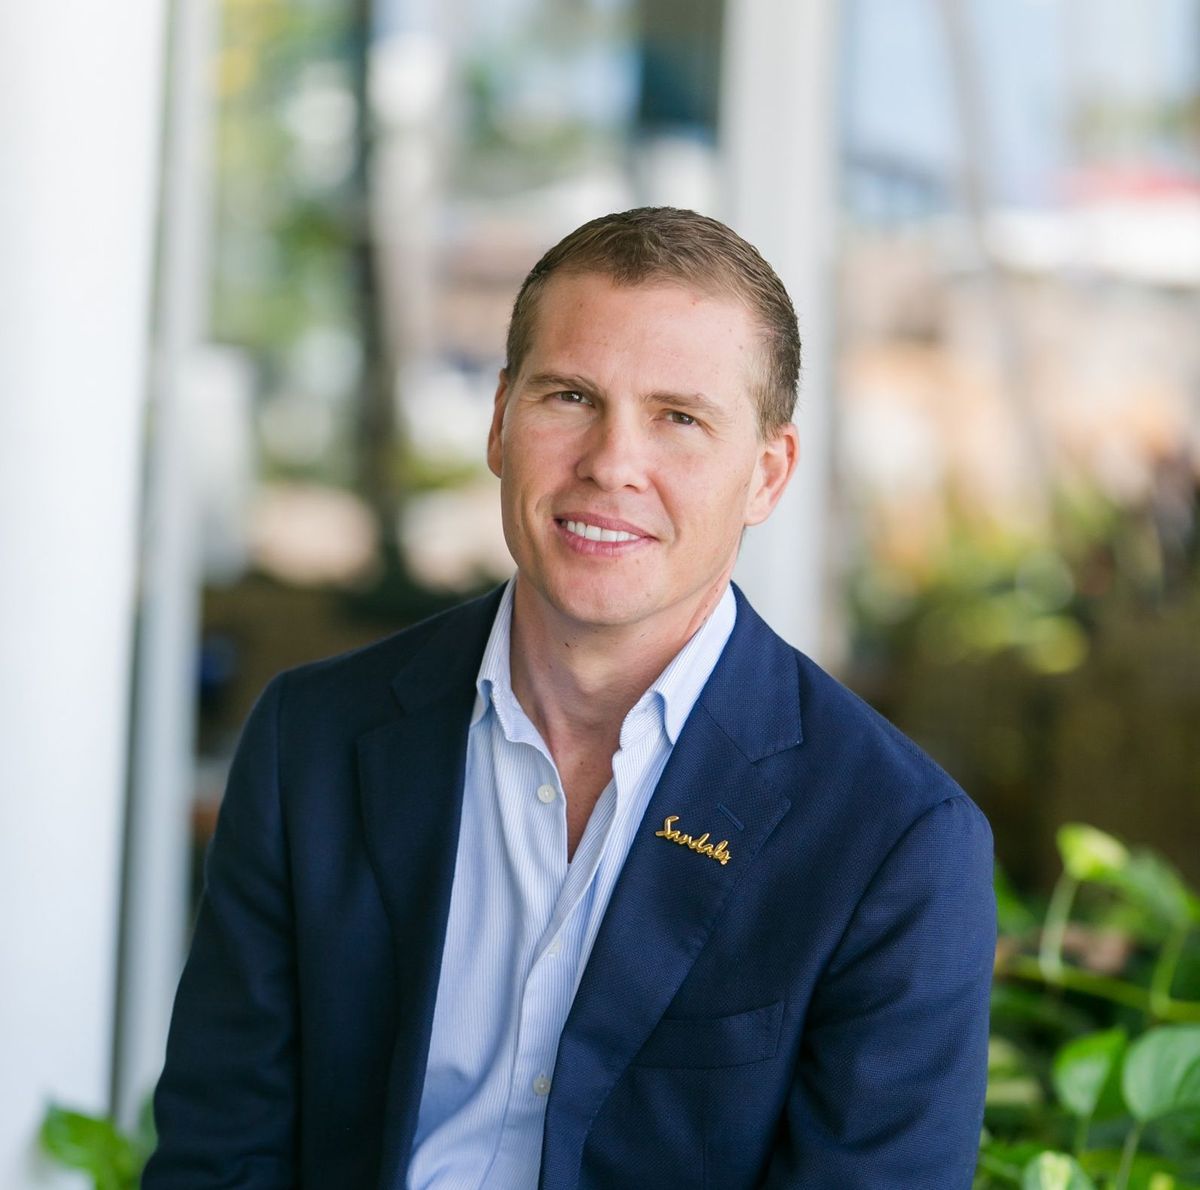 Adam Stewart, président de Sandals Resorts, nommé exécutif de l'année ...